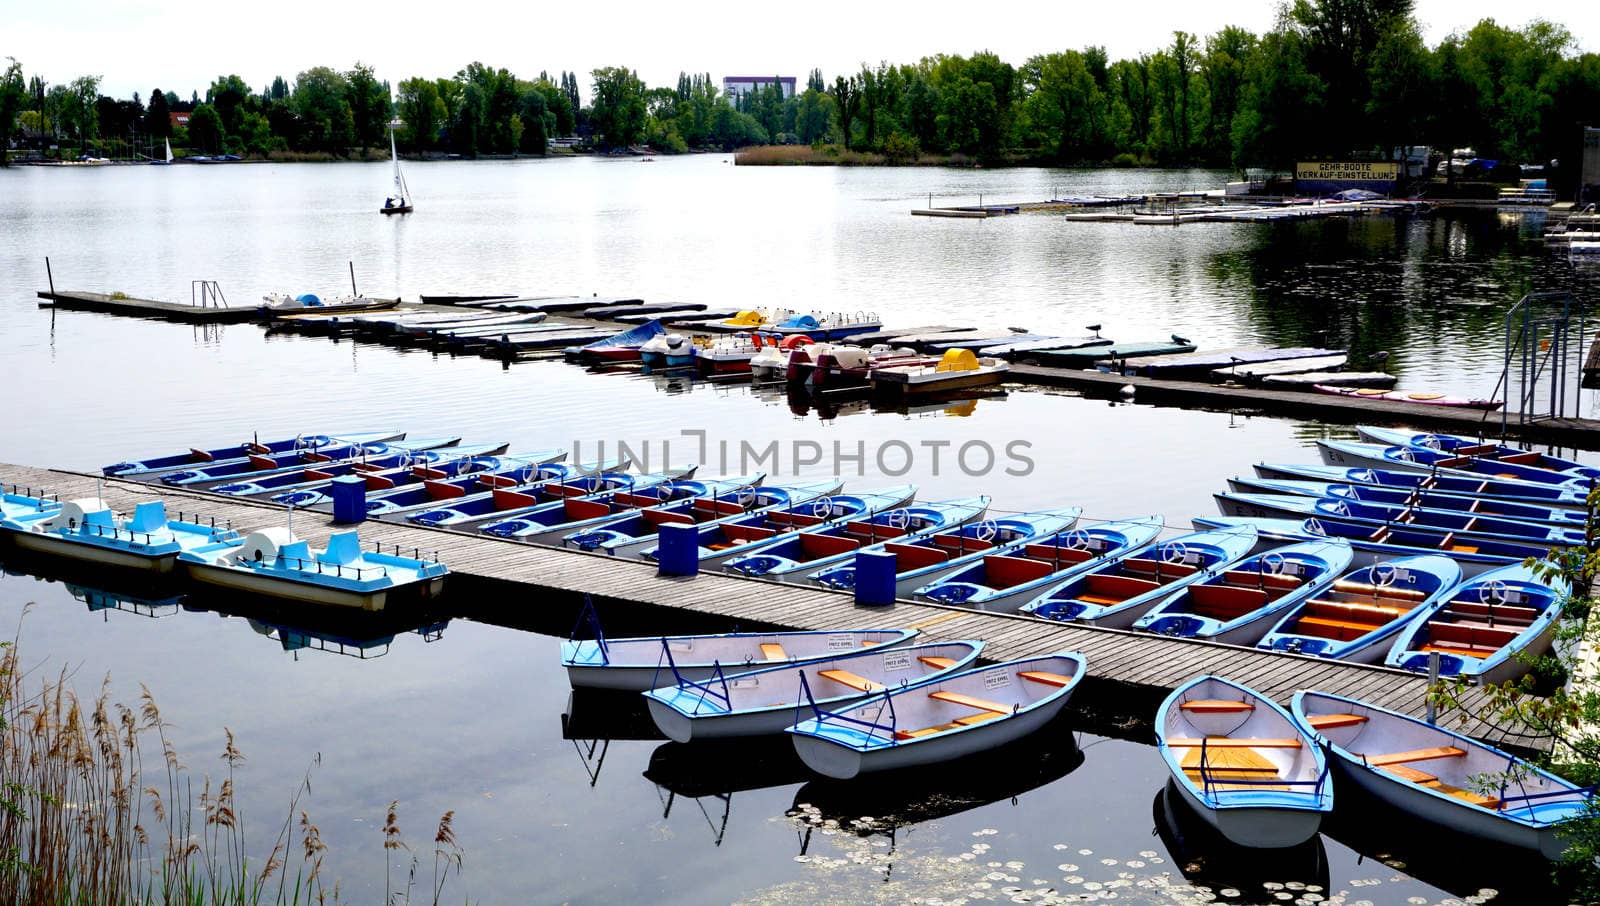 Boats in Danube  River Landscape by polarbearstudio